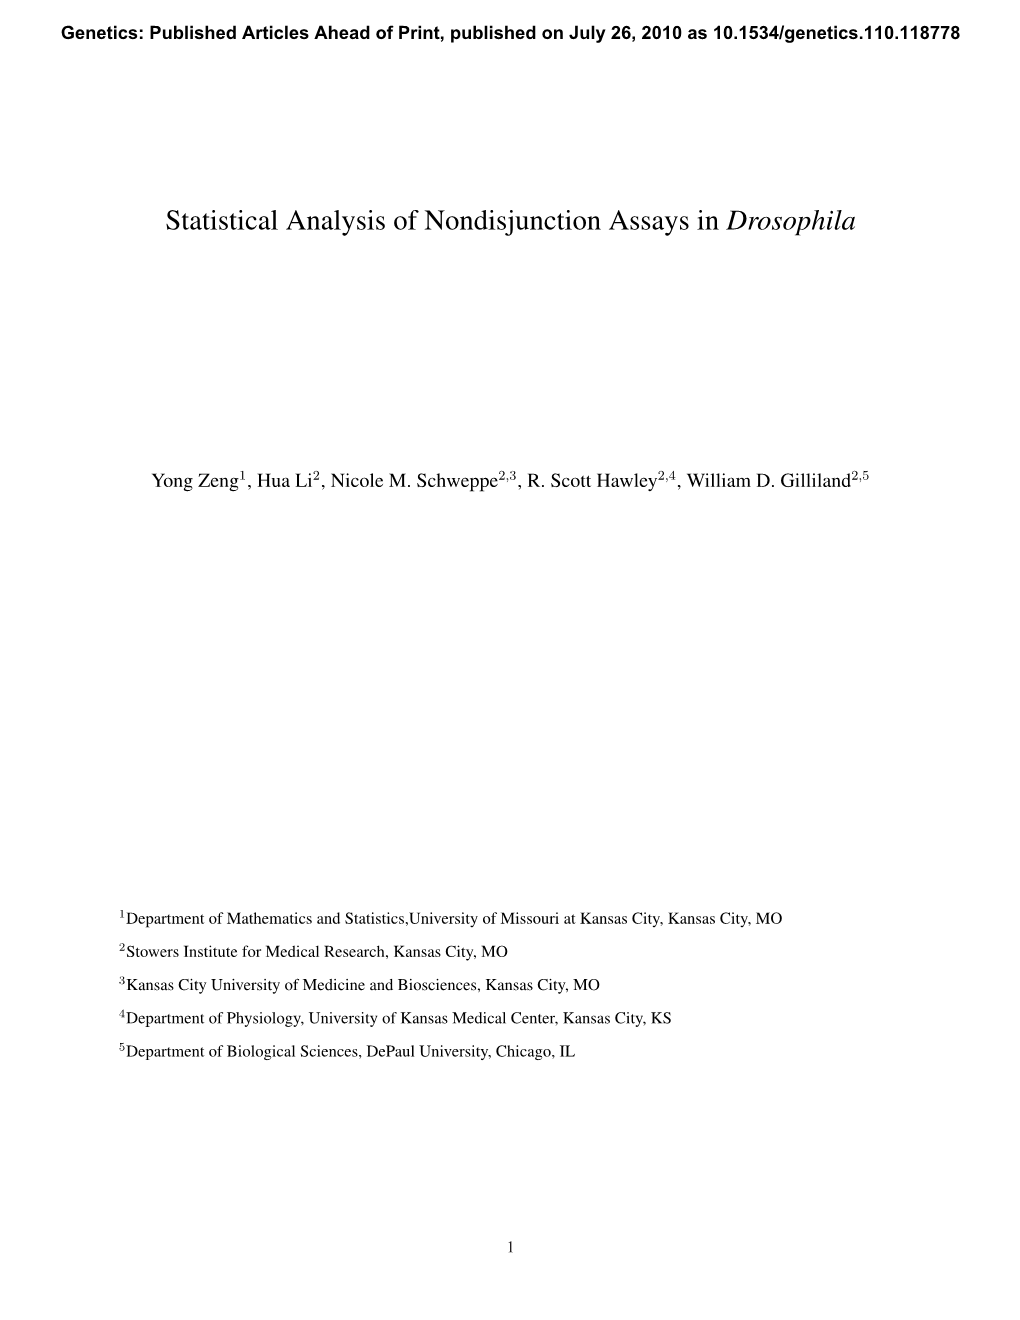 Statistical Analysis of Nondisjunction Assays in Drosophila